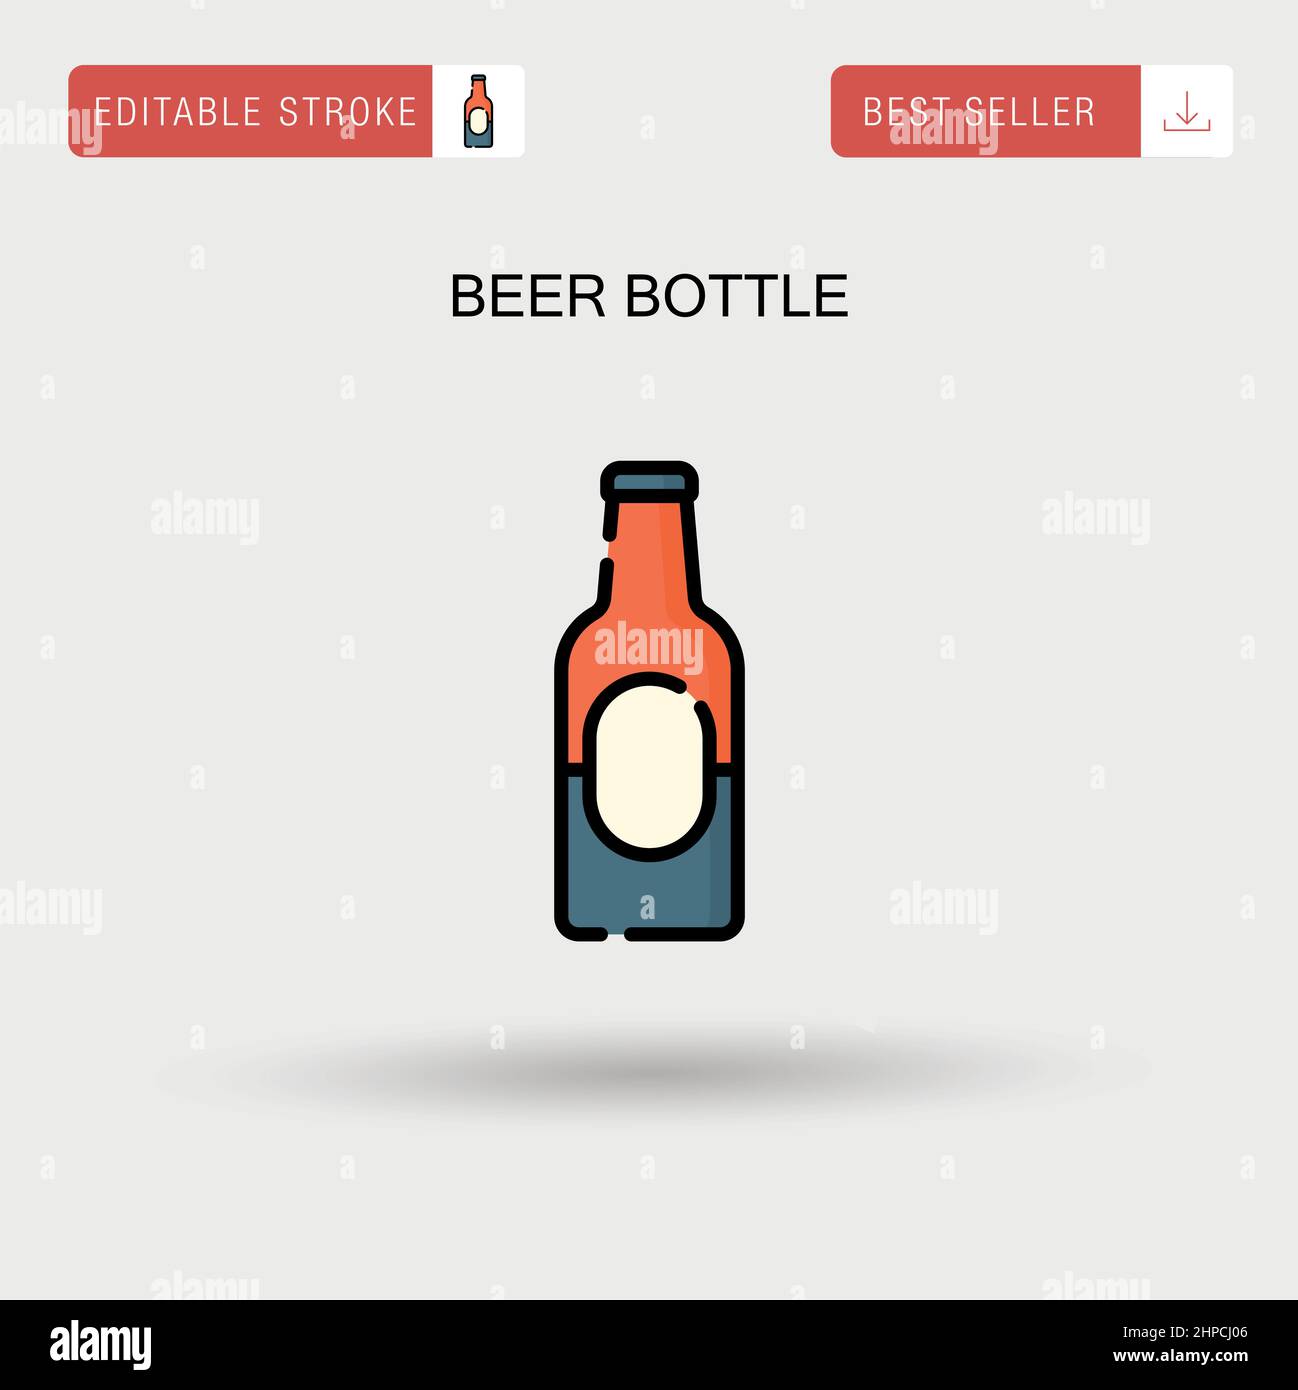 Einfaches Vektorsymbol für Bierflaschen. Stock Vektor